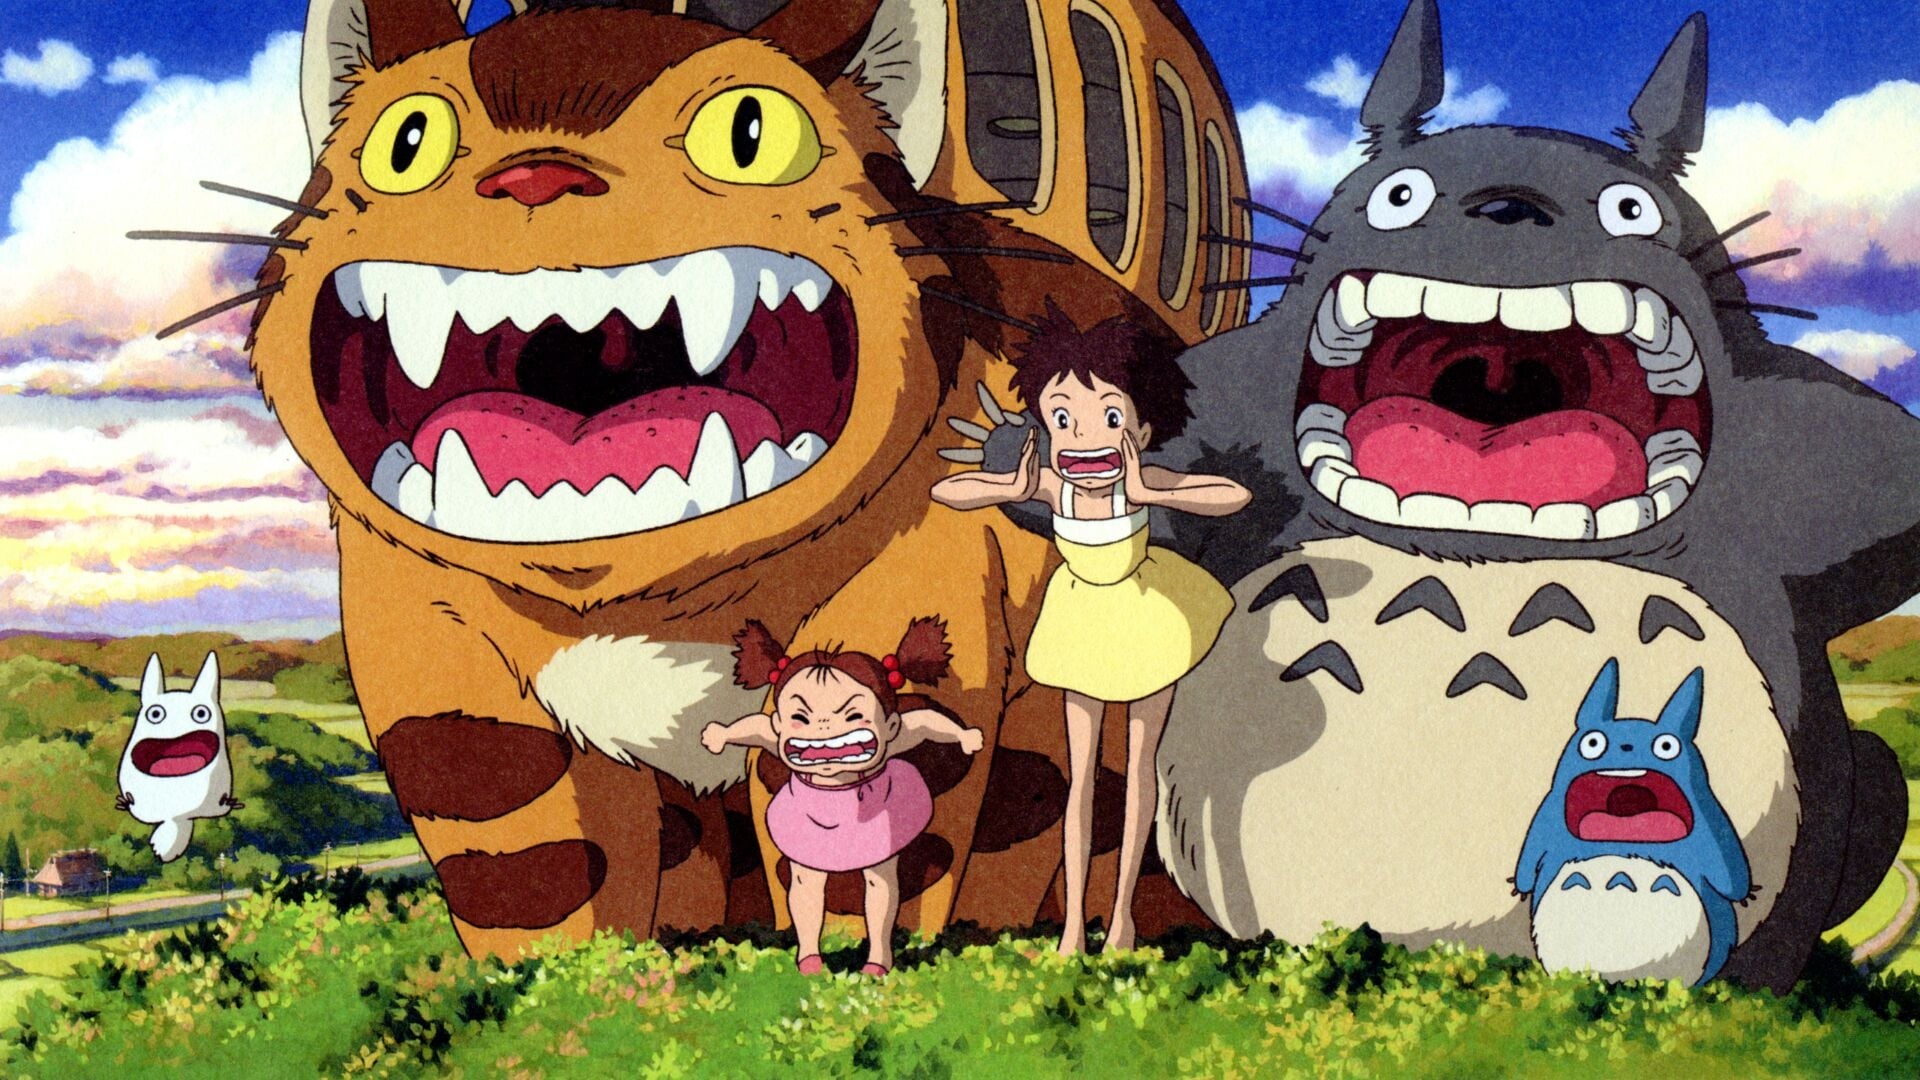 Totoro - A varázserdő titka